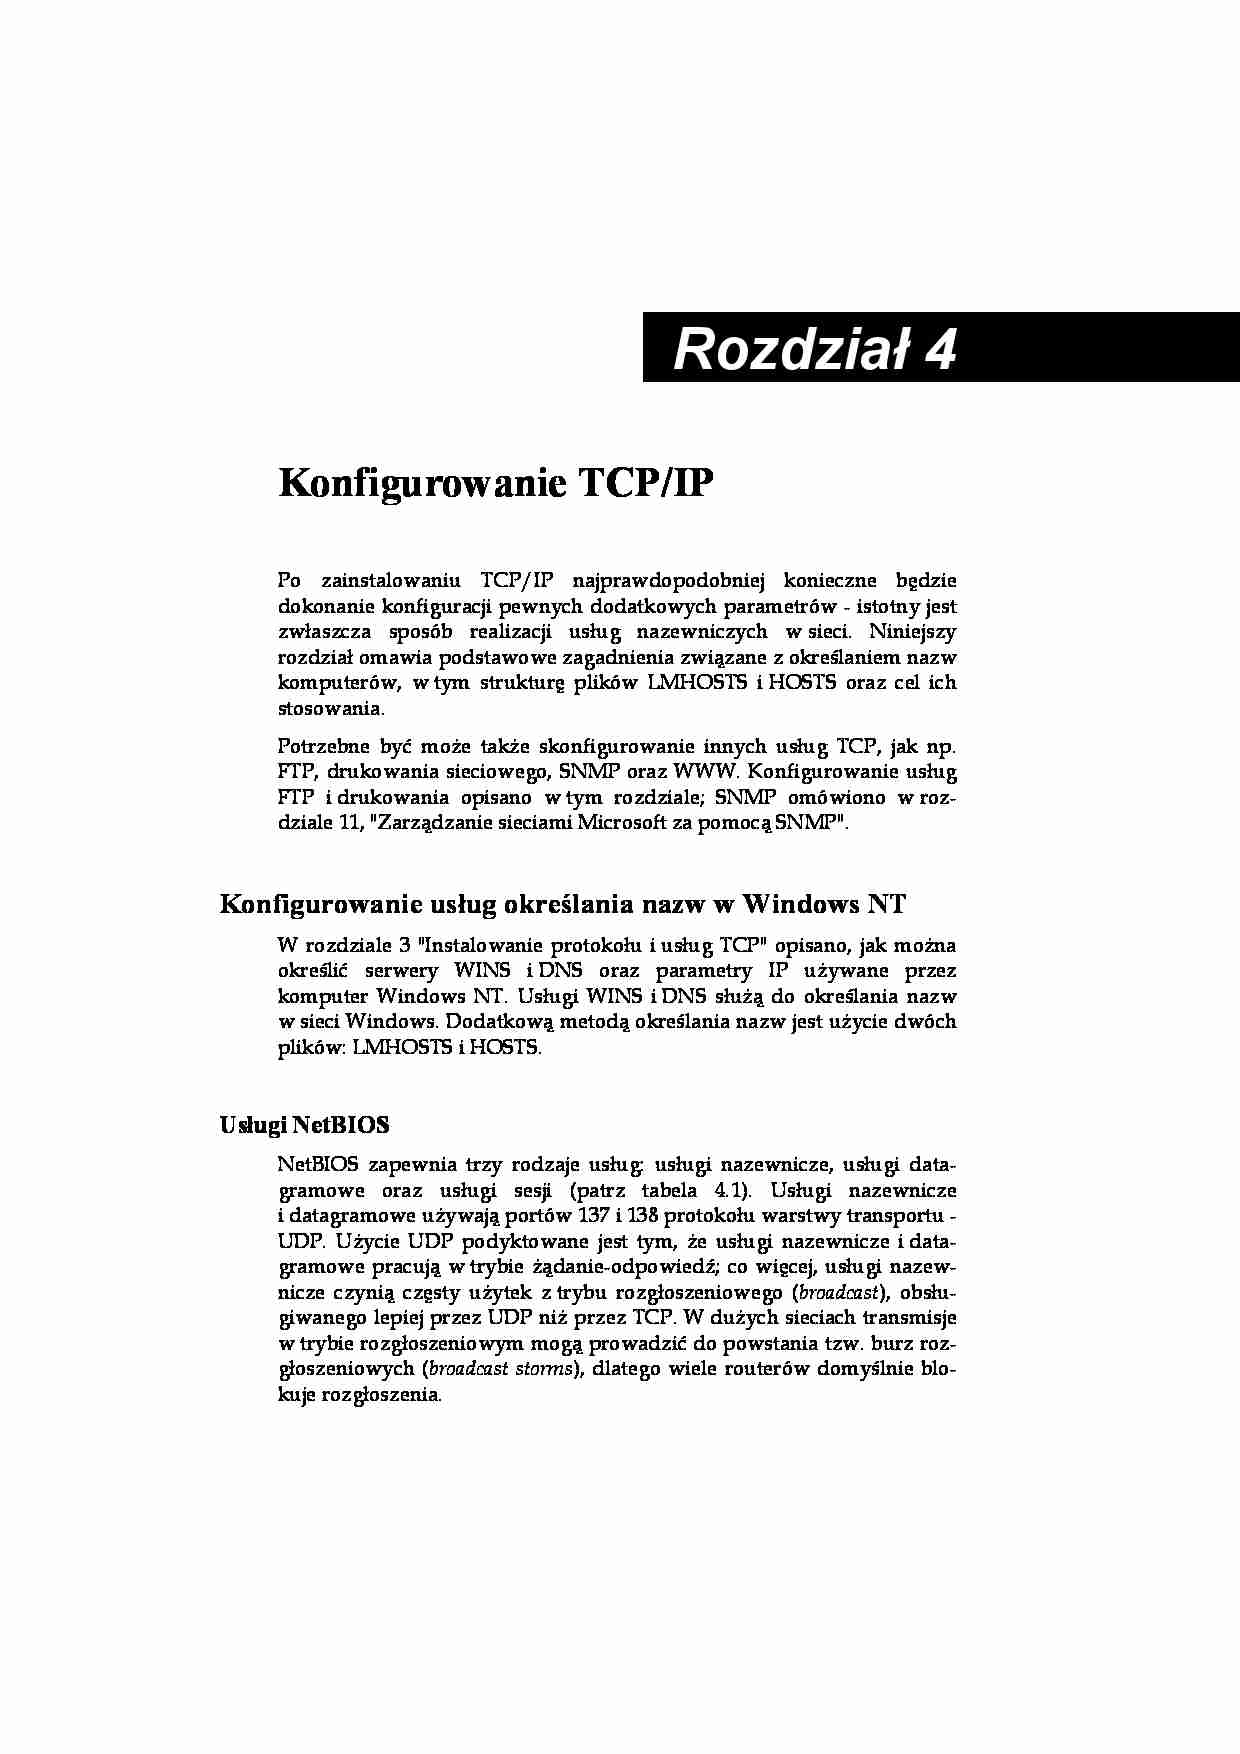 Architektura TCP IP w Windows 4 - strona 1